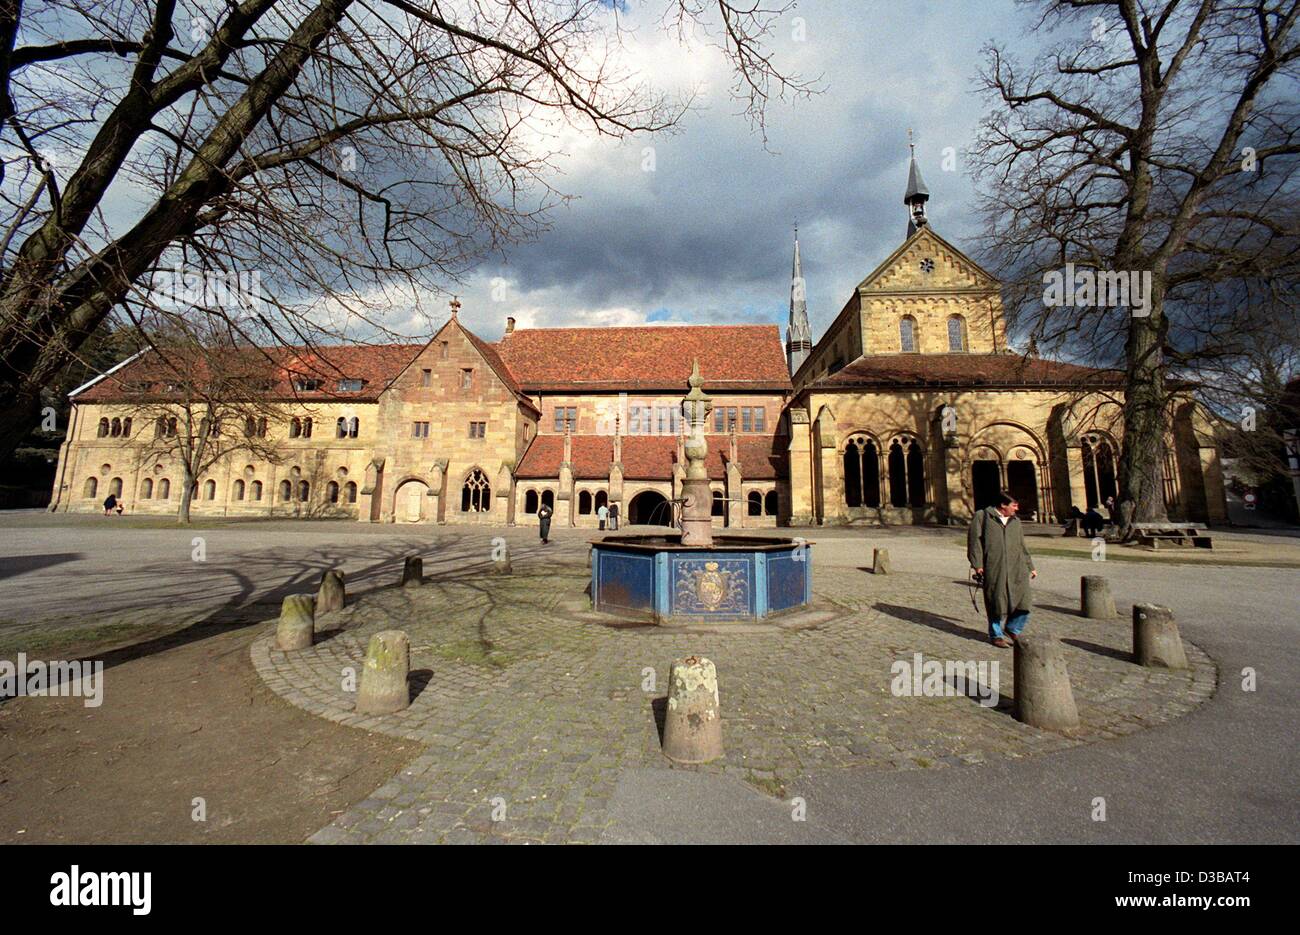 (Dpa file) - Il convento di Maulbronn, Germania, 7 aprile 1994. Il convento cistercense fu fondata nel 1147. È sulla lista del Patrimonio Mondiale UNESCO dal 1994. Foto Stock